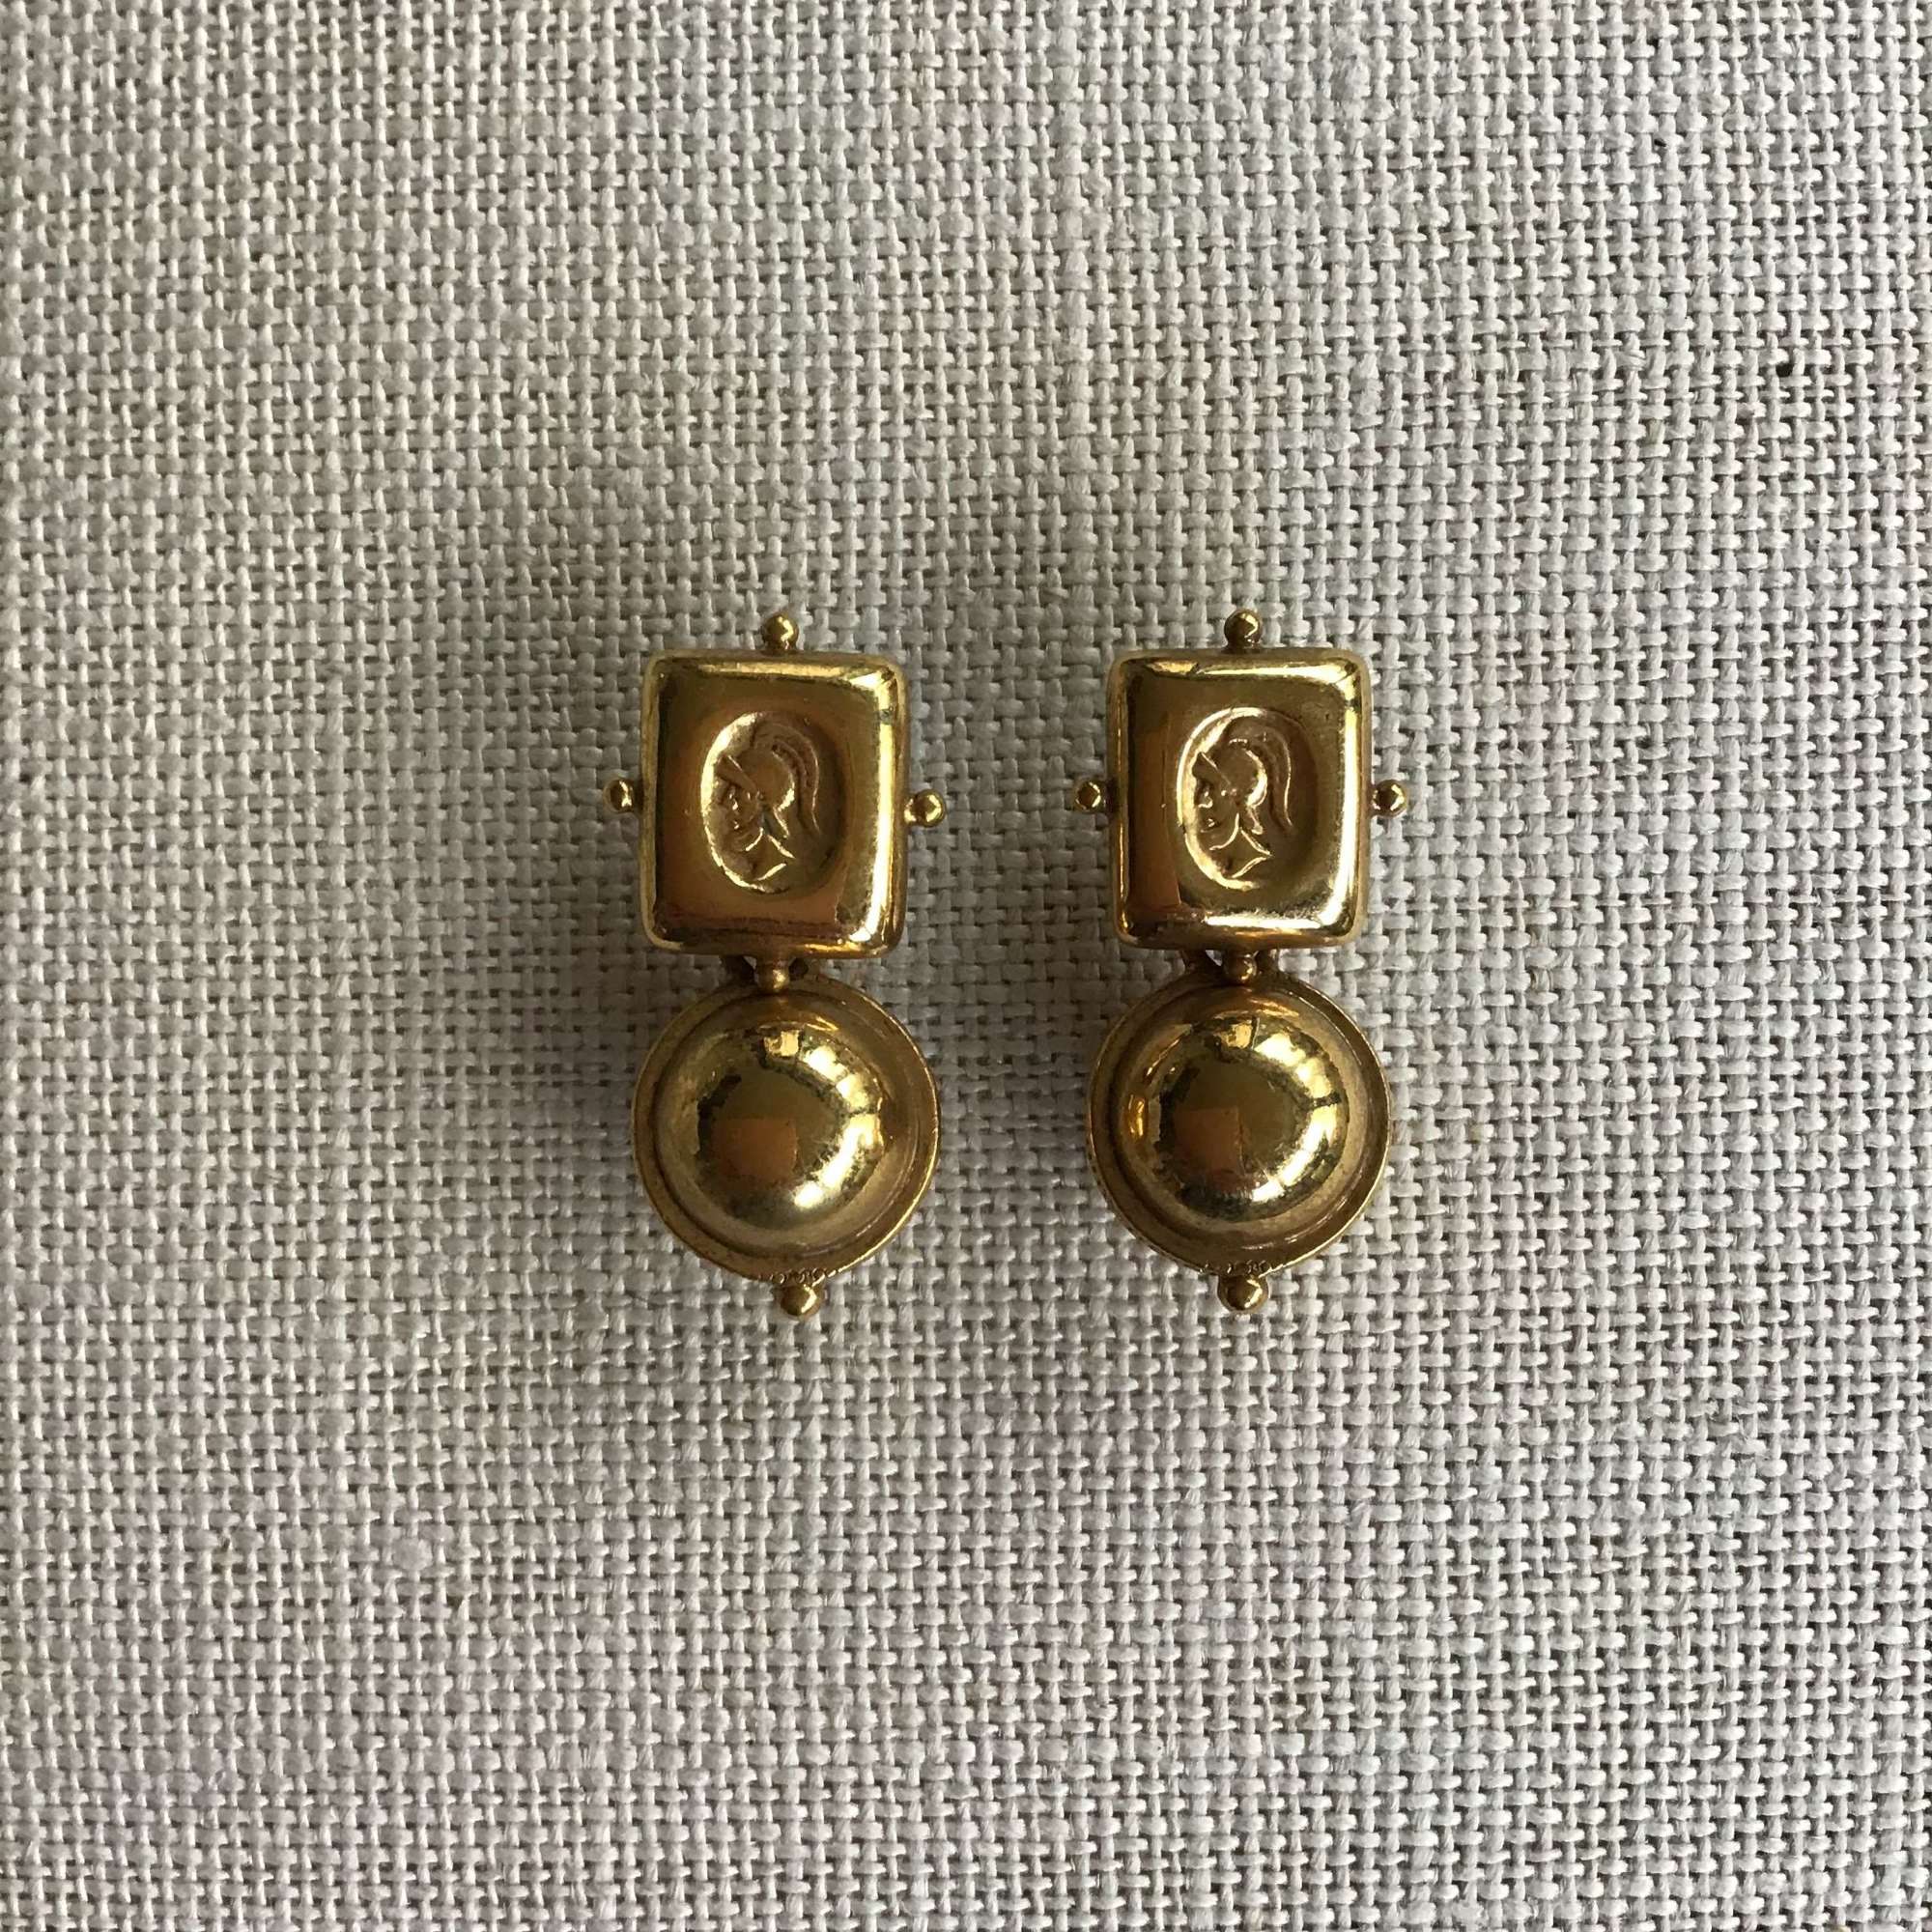 Vintage Antiquities Roman soldier drop earrings